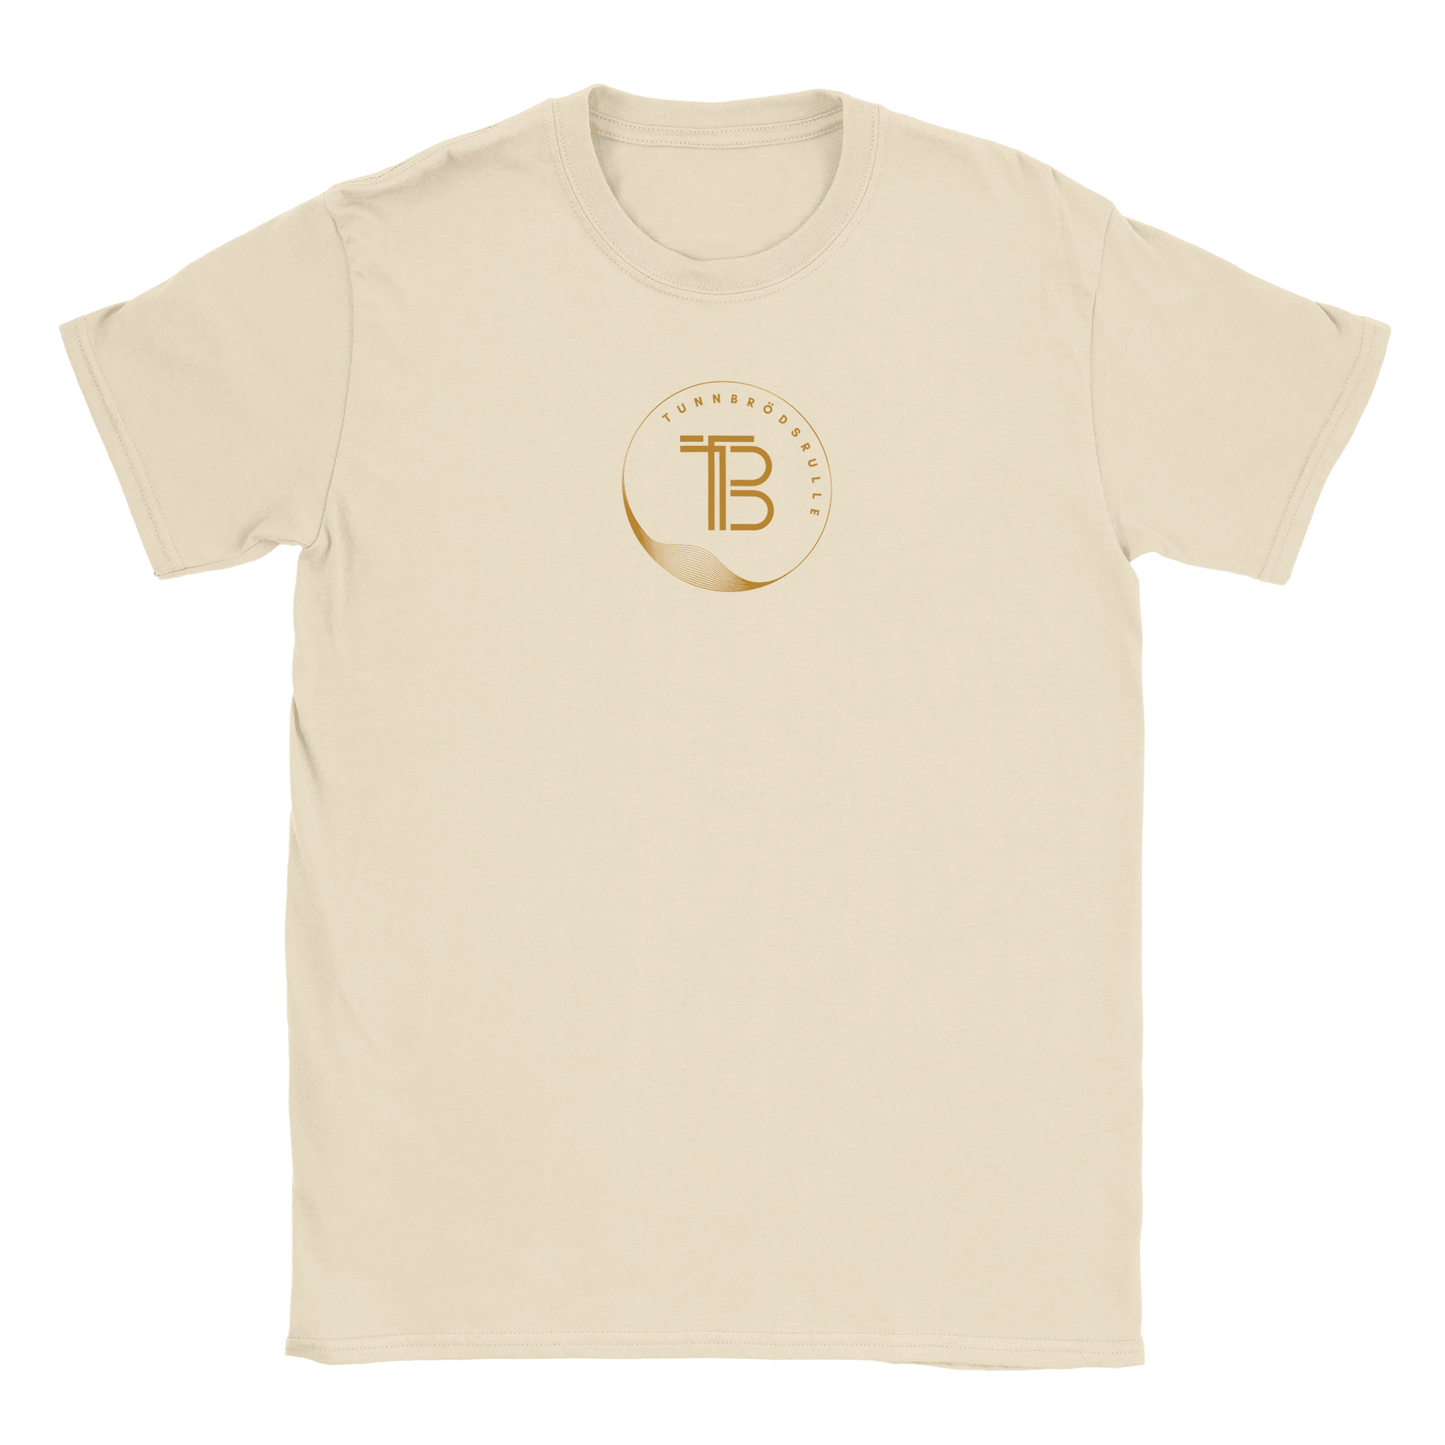 Tunnbrödsrulle - T-shirt Beige